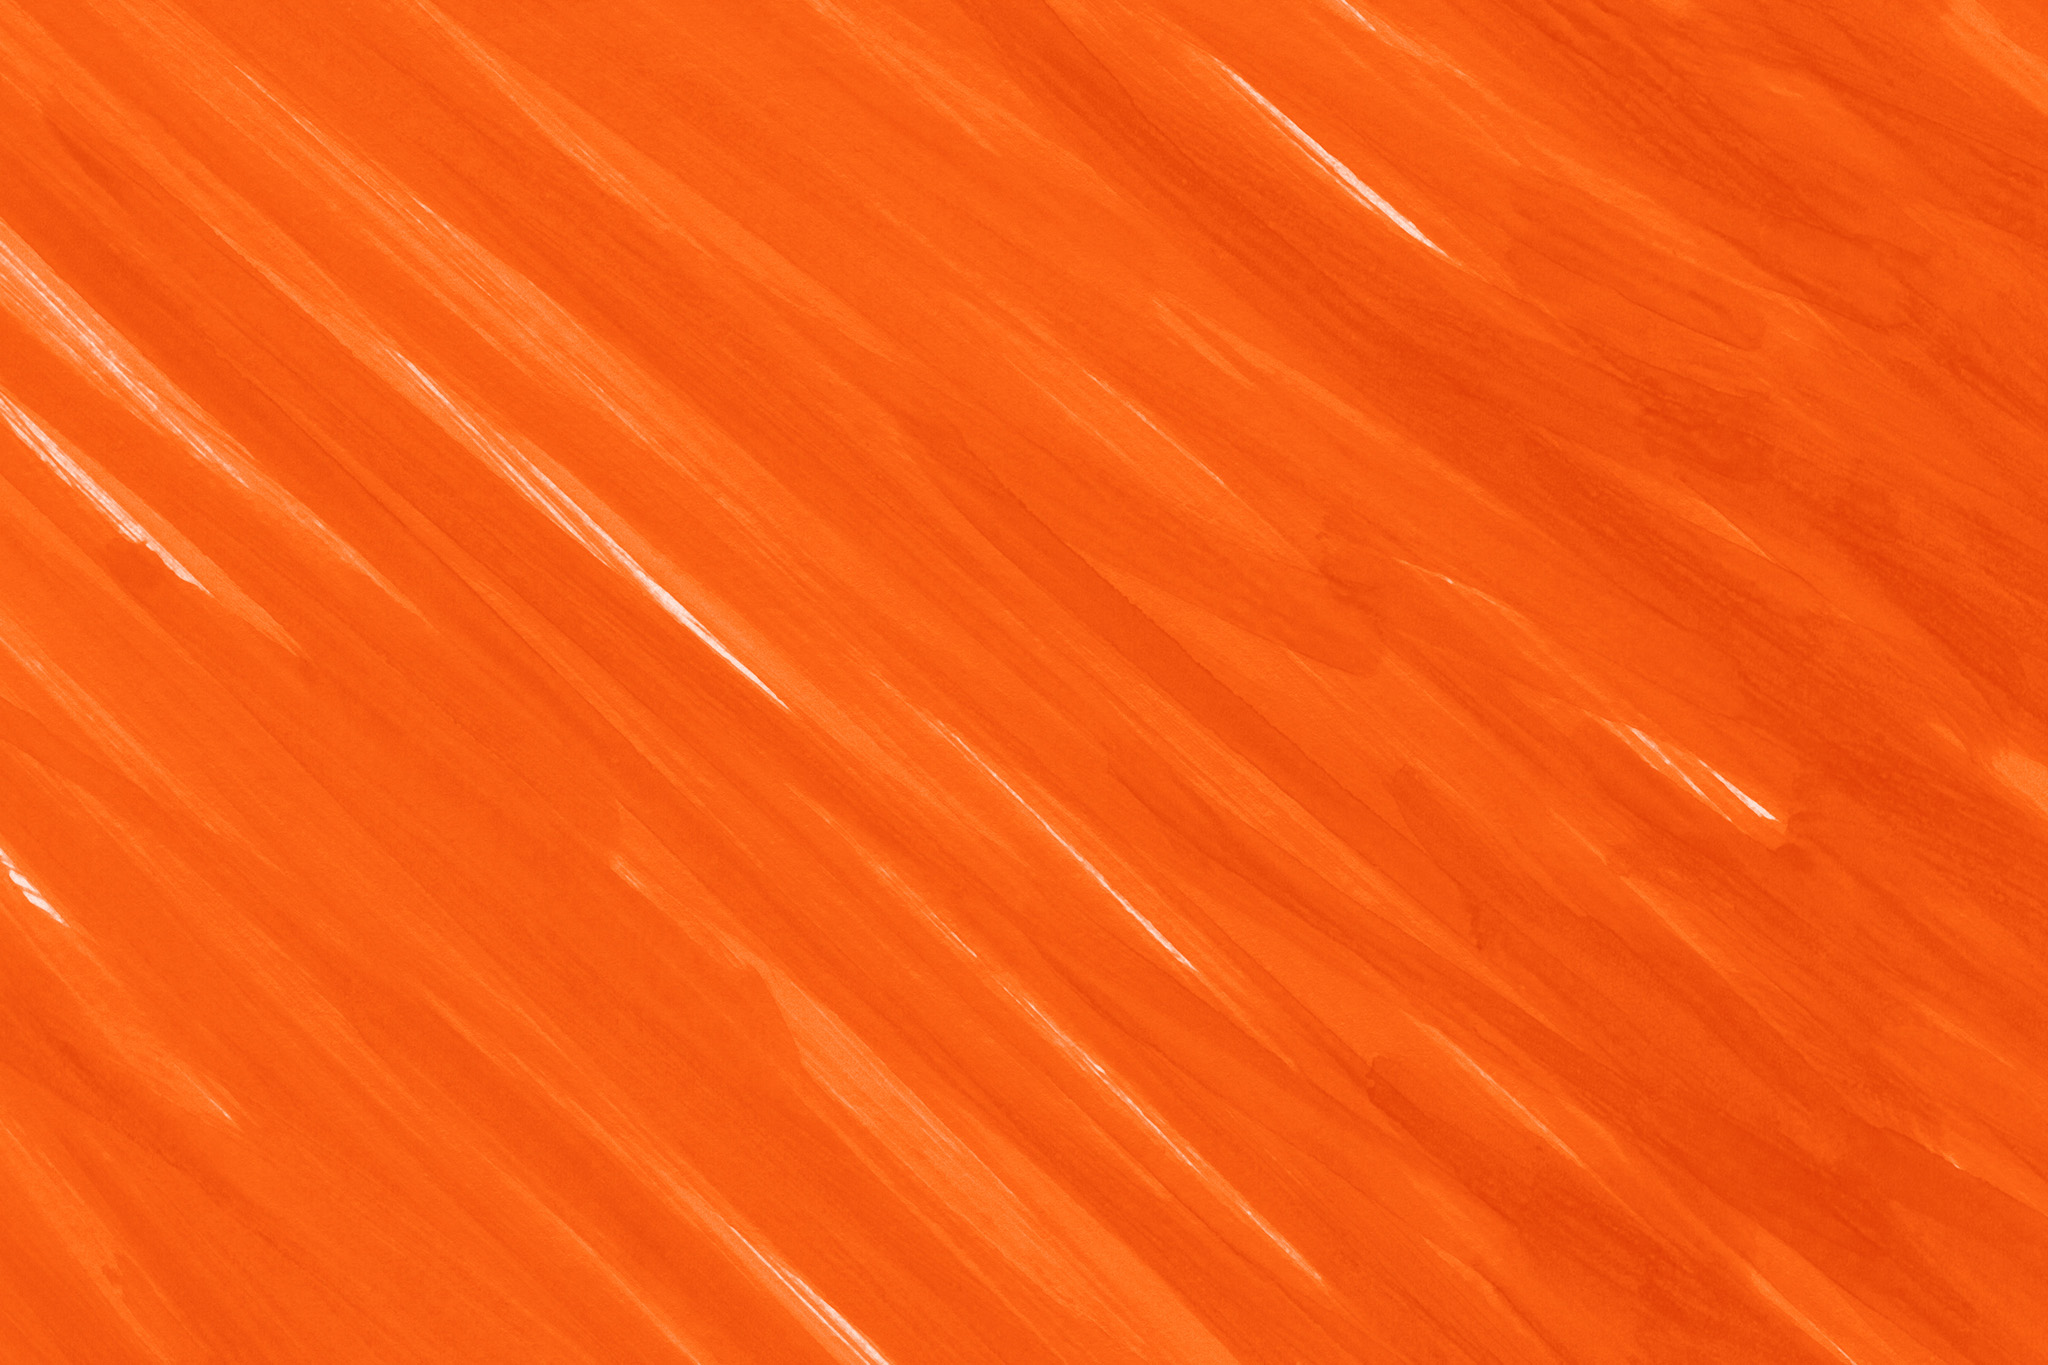 クールなオレンジ色の背景壁紙 の画像素材を無料ダウンロード 1 フリー素材 Beiz Images